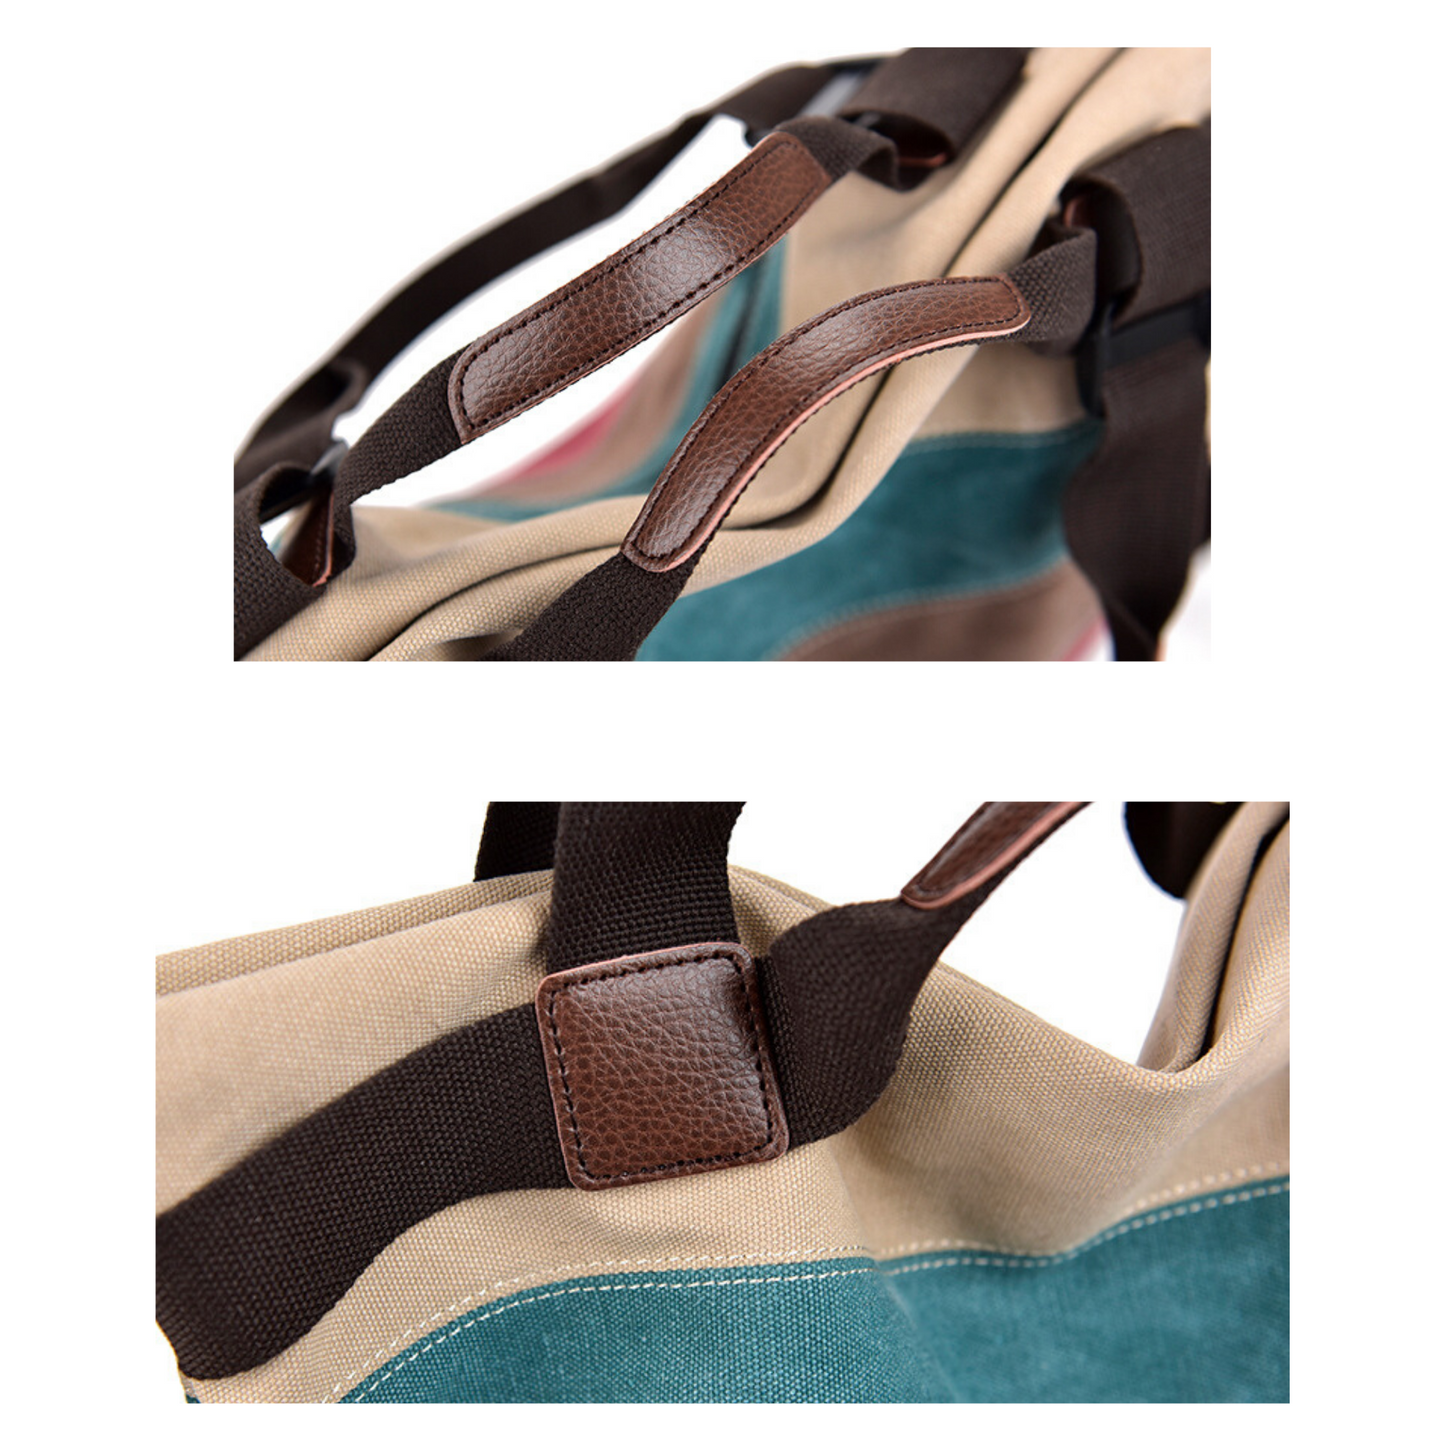 Large Retro Coloured Oxford Carry Shoulder Messenger Satchel Handbag Tote Bag - BrandsByG